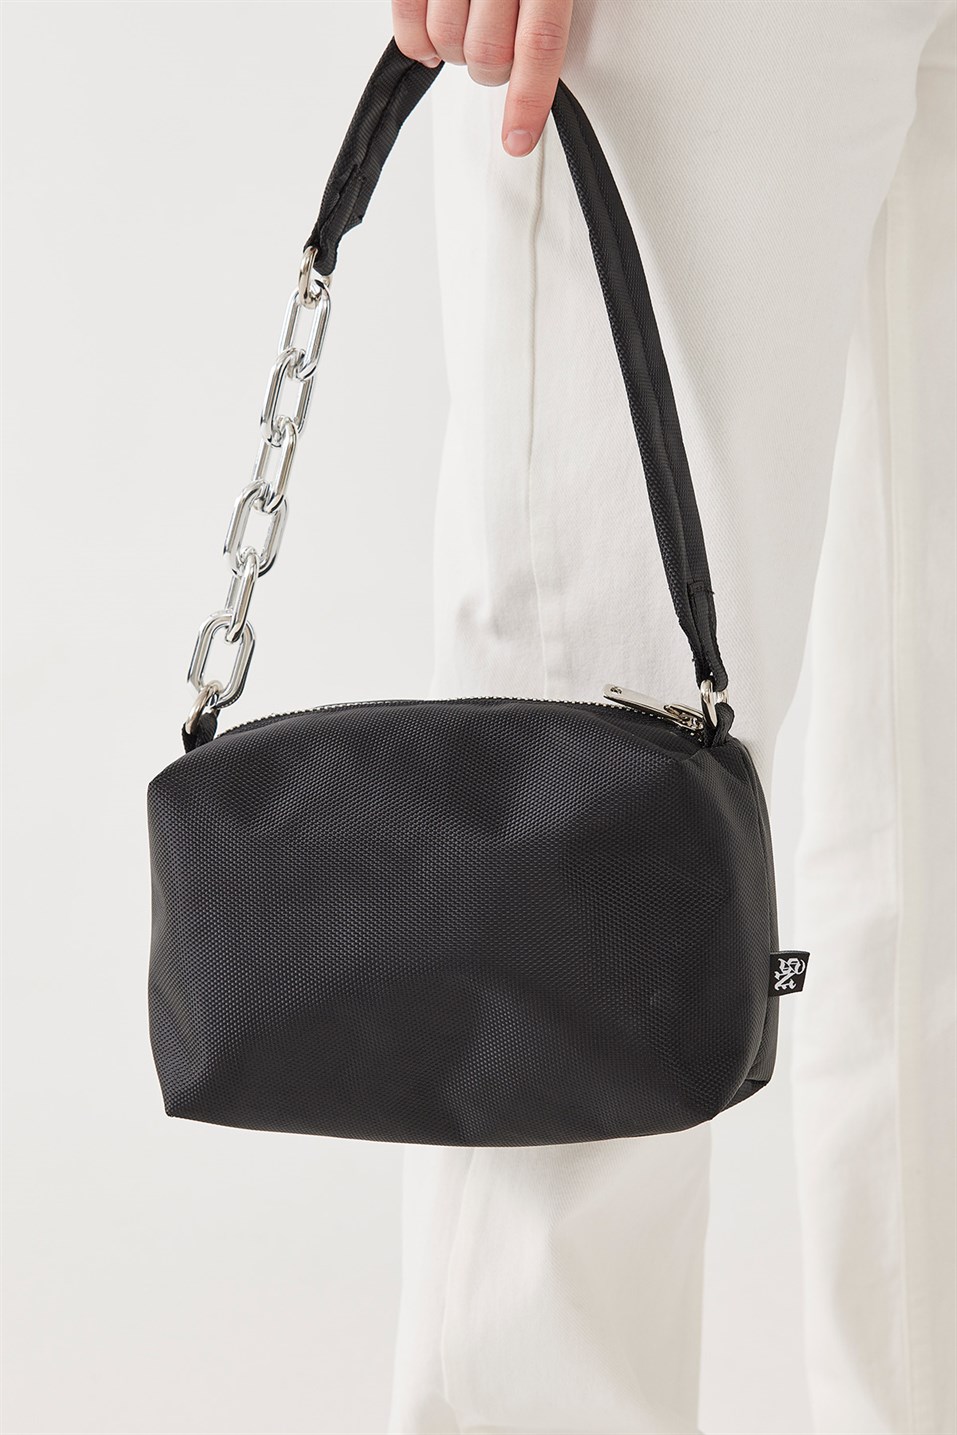 Black Chain Strap Shoulder Bag